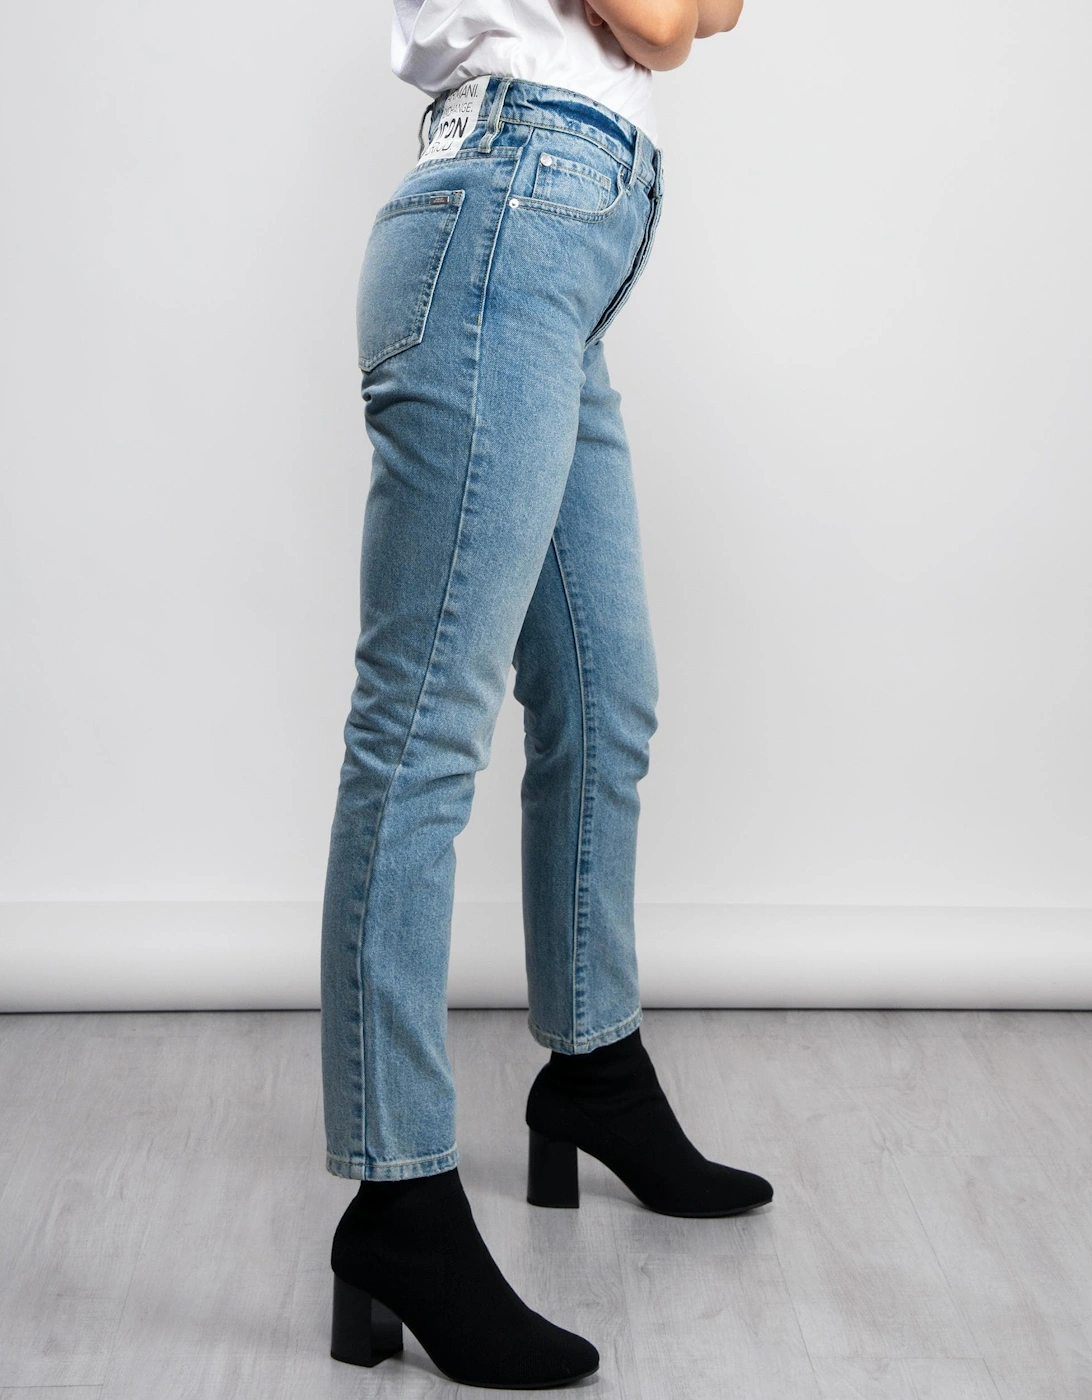 J51 5-Pocket Carrot Fit Jeans